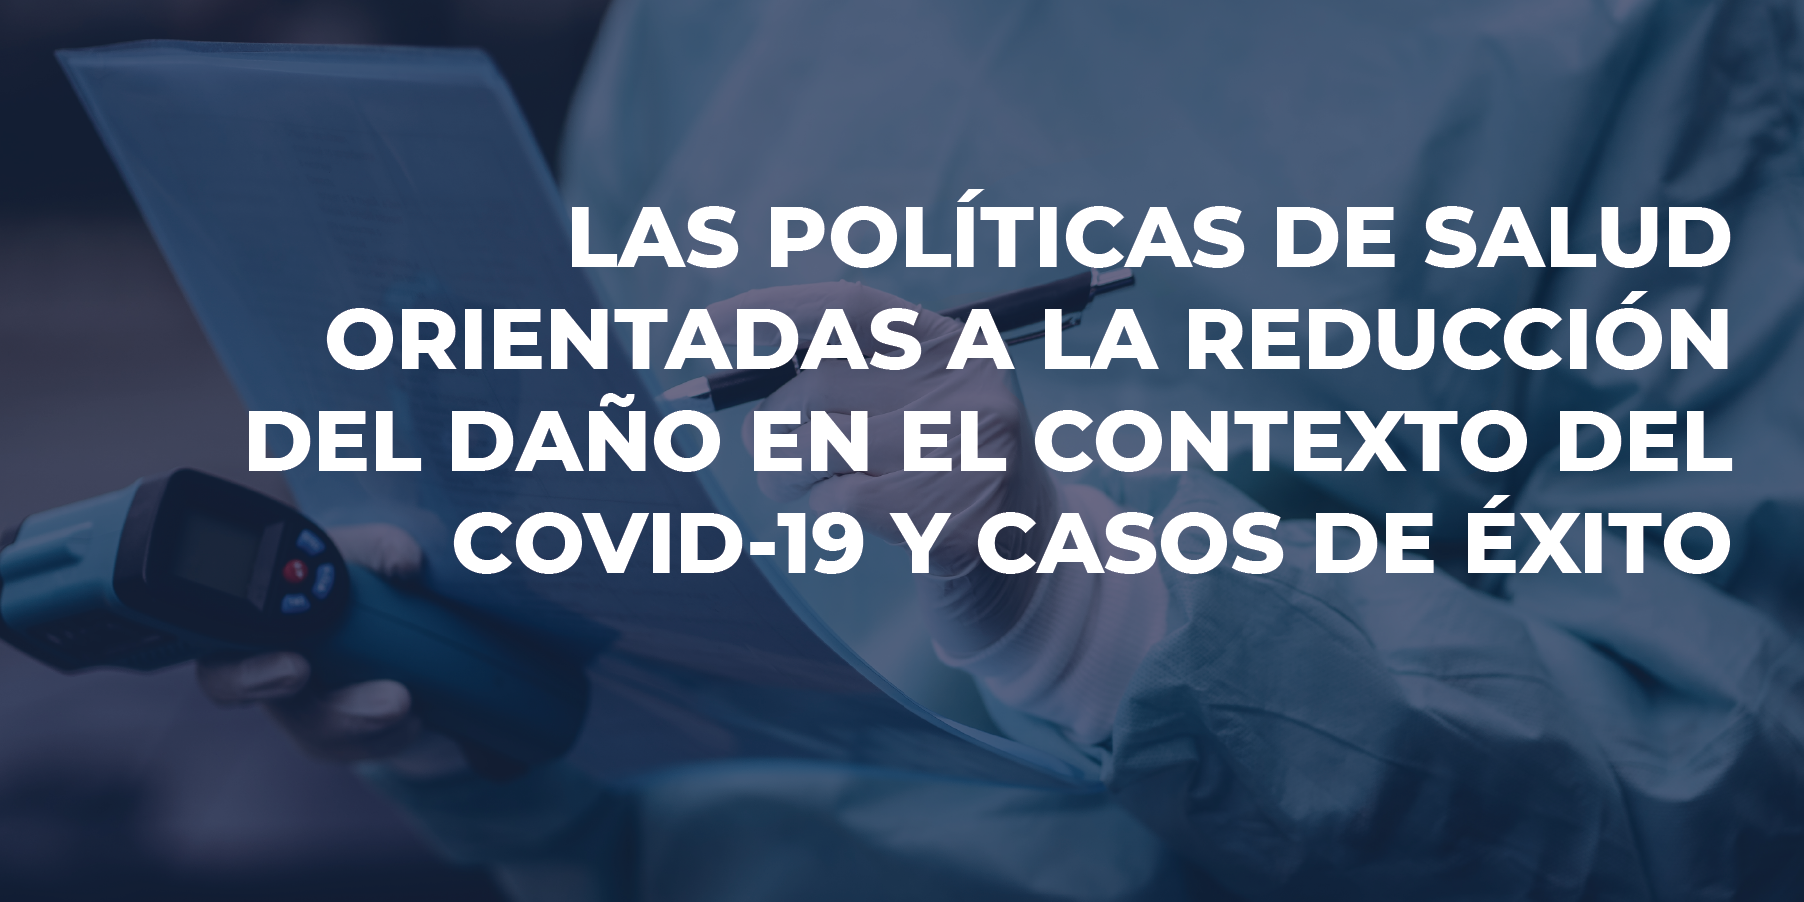 LAS POLÍTICAS DE SALUD ORIENTADAS A LA REDUCCIÓN DEL DAÑO EN EL CONTEXTO DEL COVID-19 Y CASOS DE ÉXITO